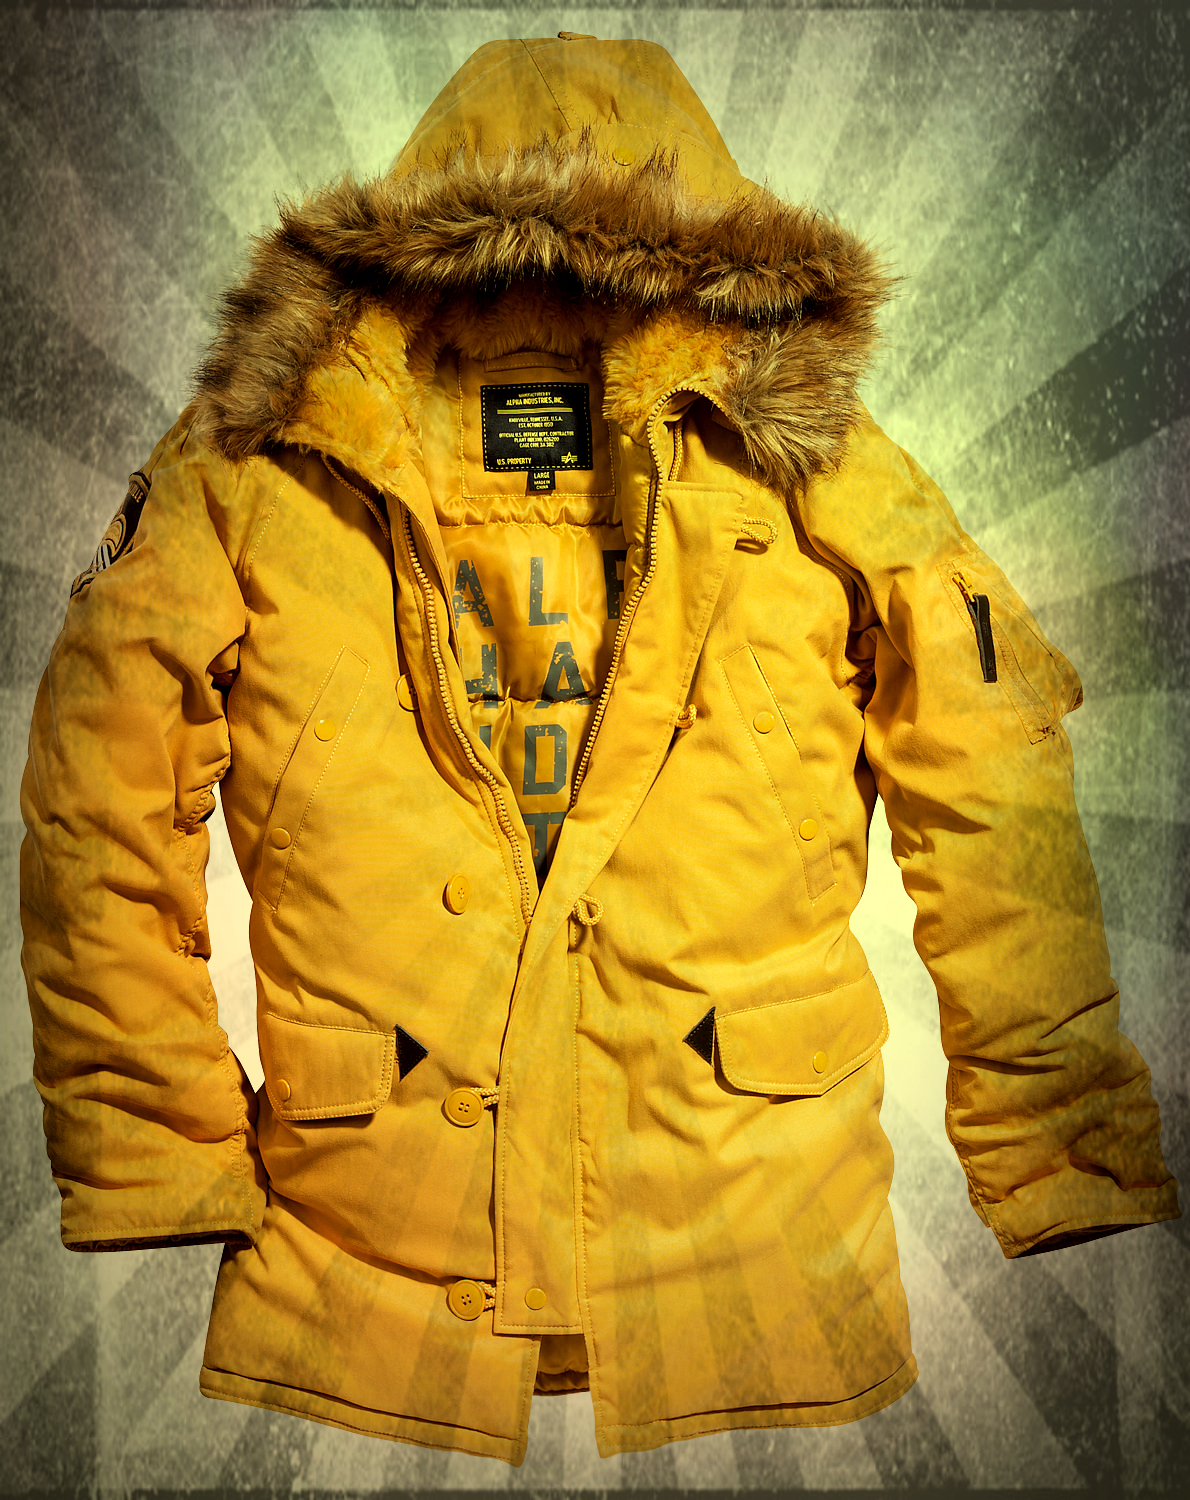 Новинка 2013 - куртка Altitude уже в продаже!